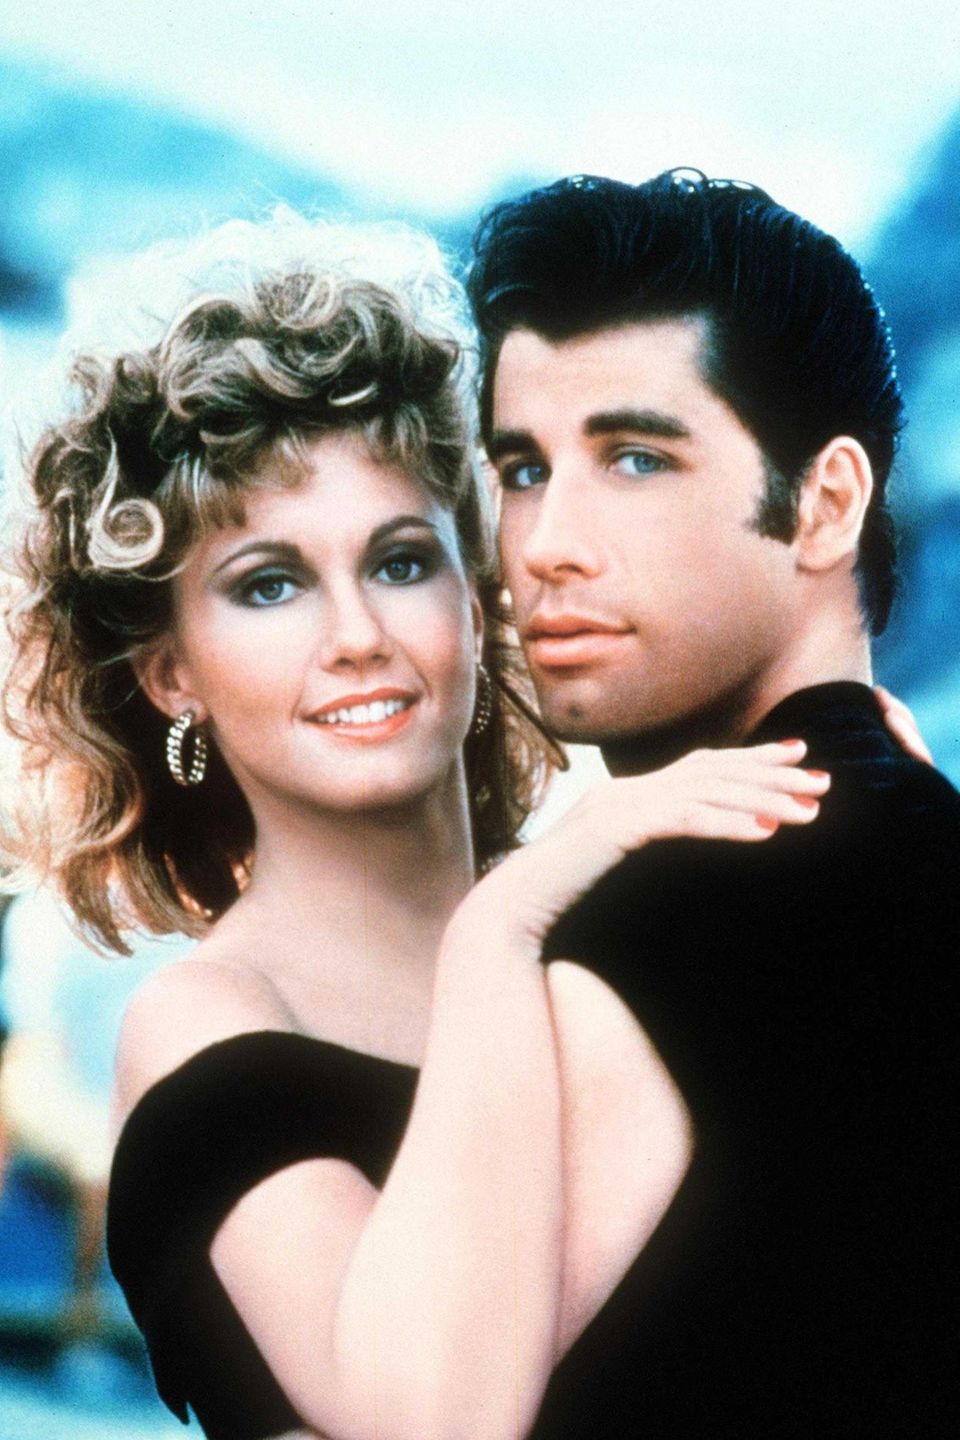 Grease   Die unvergessliche Liebesgeschichte zwischen zwei Highschool-Teenagern hat Olivia Newton-John und John Travolta zu großen Hollywoodstars gemacht. Die Musical-Verfilmung hat 1978 einen noch nie dagewesenen Disco-Hype ausgelöst. 40 Jahre später treffen Olivia und John wieder aufeinander; und haben sich genauso gern wie früher ...